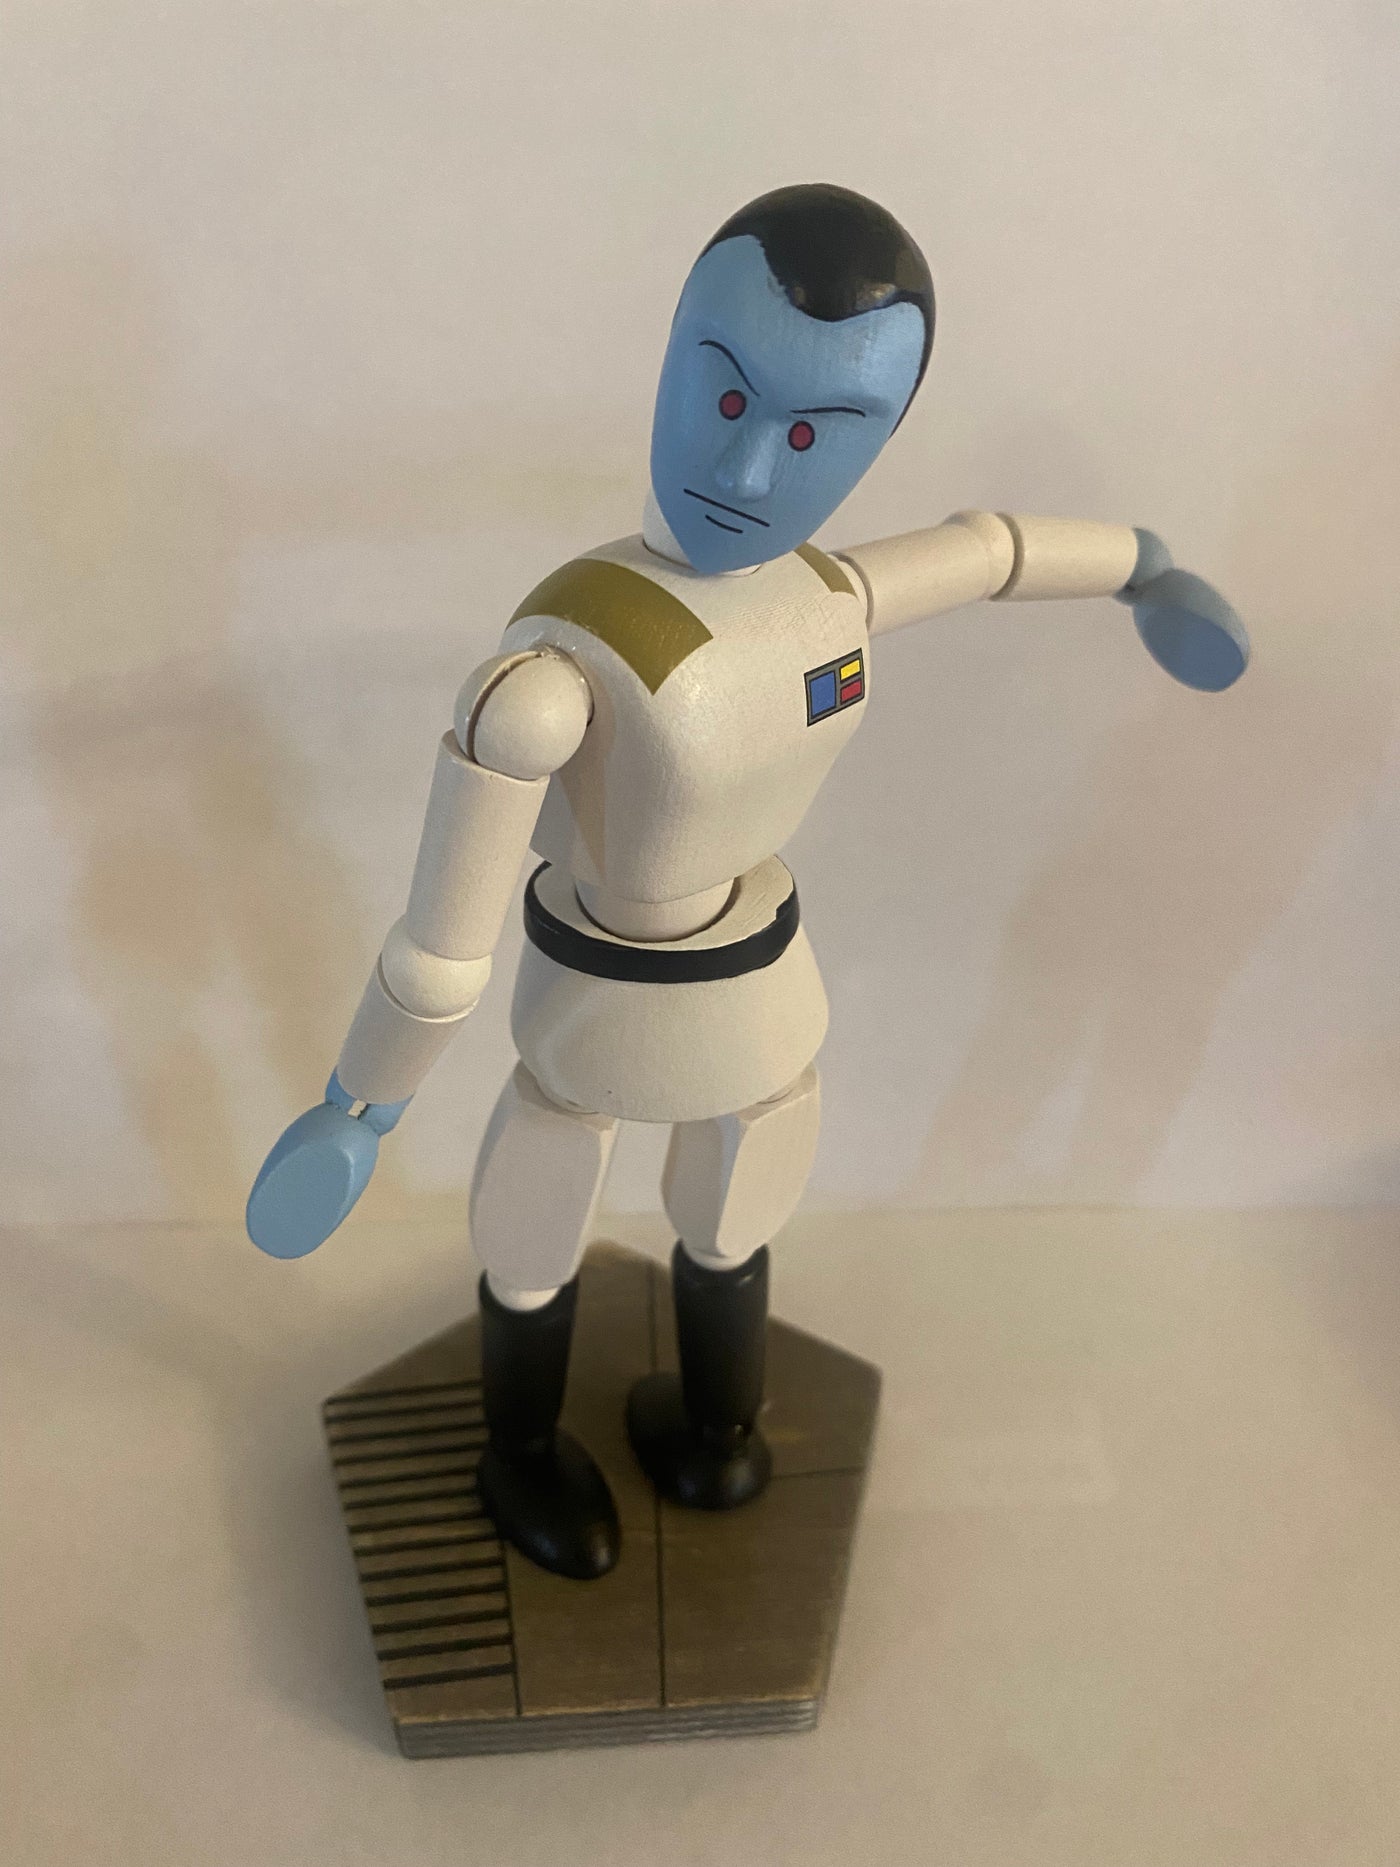 Disney Parks Star Wars Galaxy's Edge Wooden Admiral Thrawn Toy Figurine New